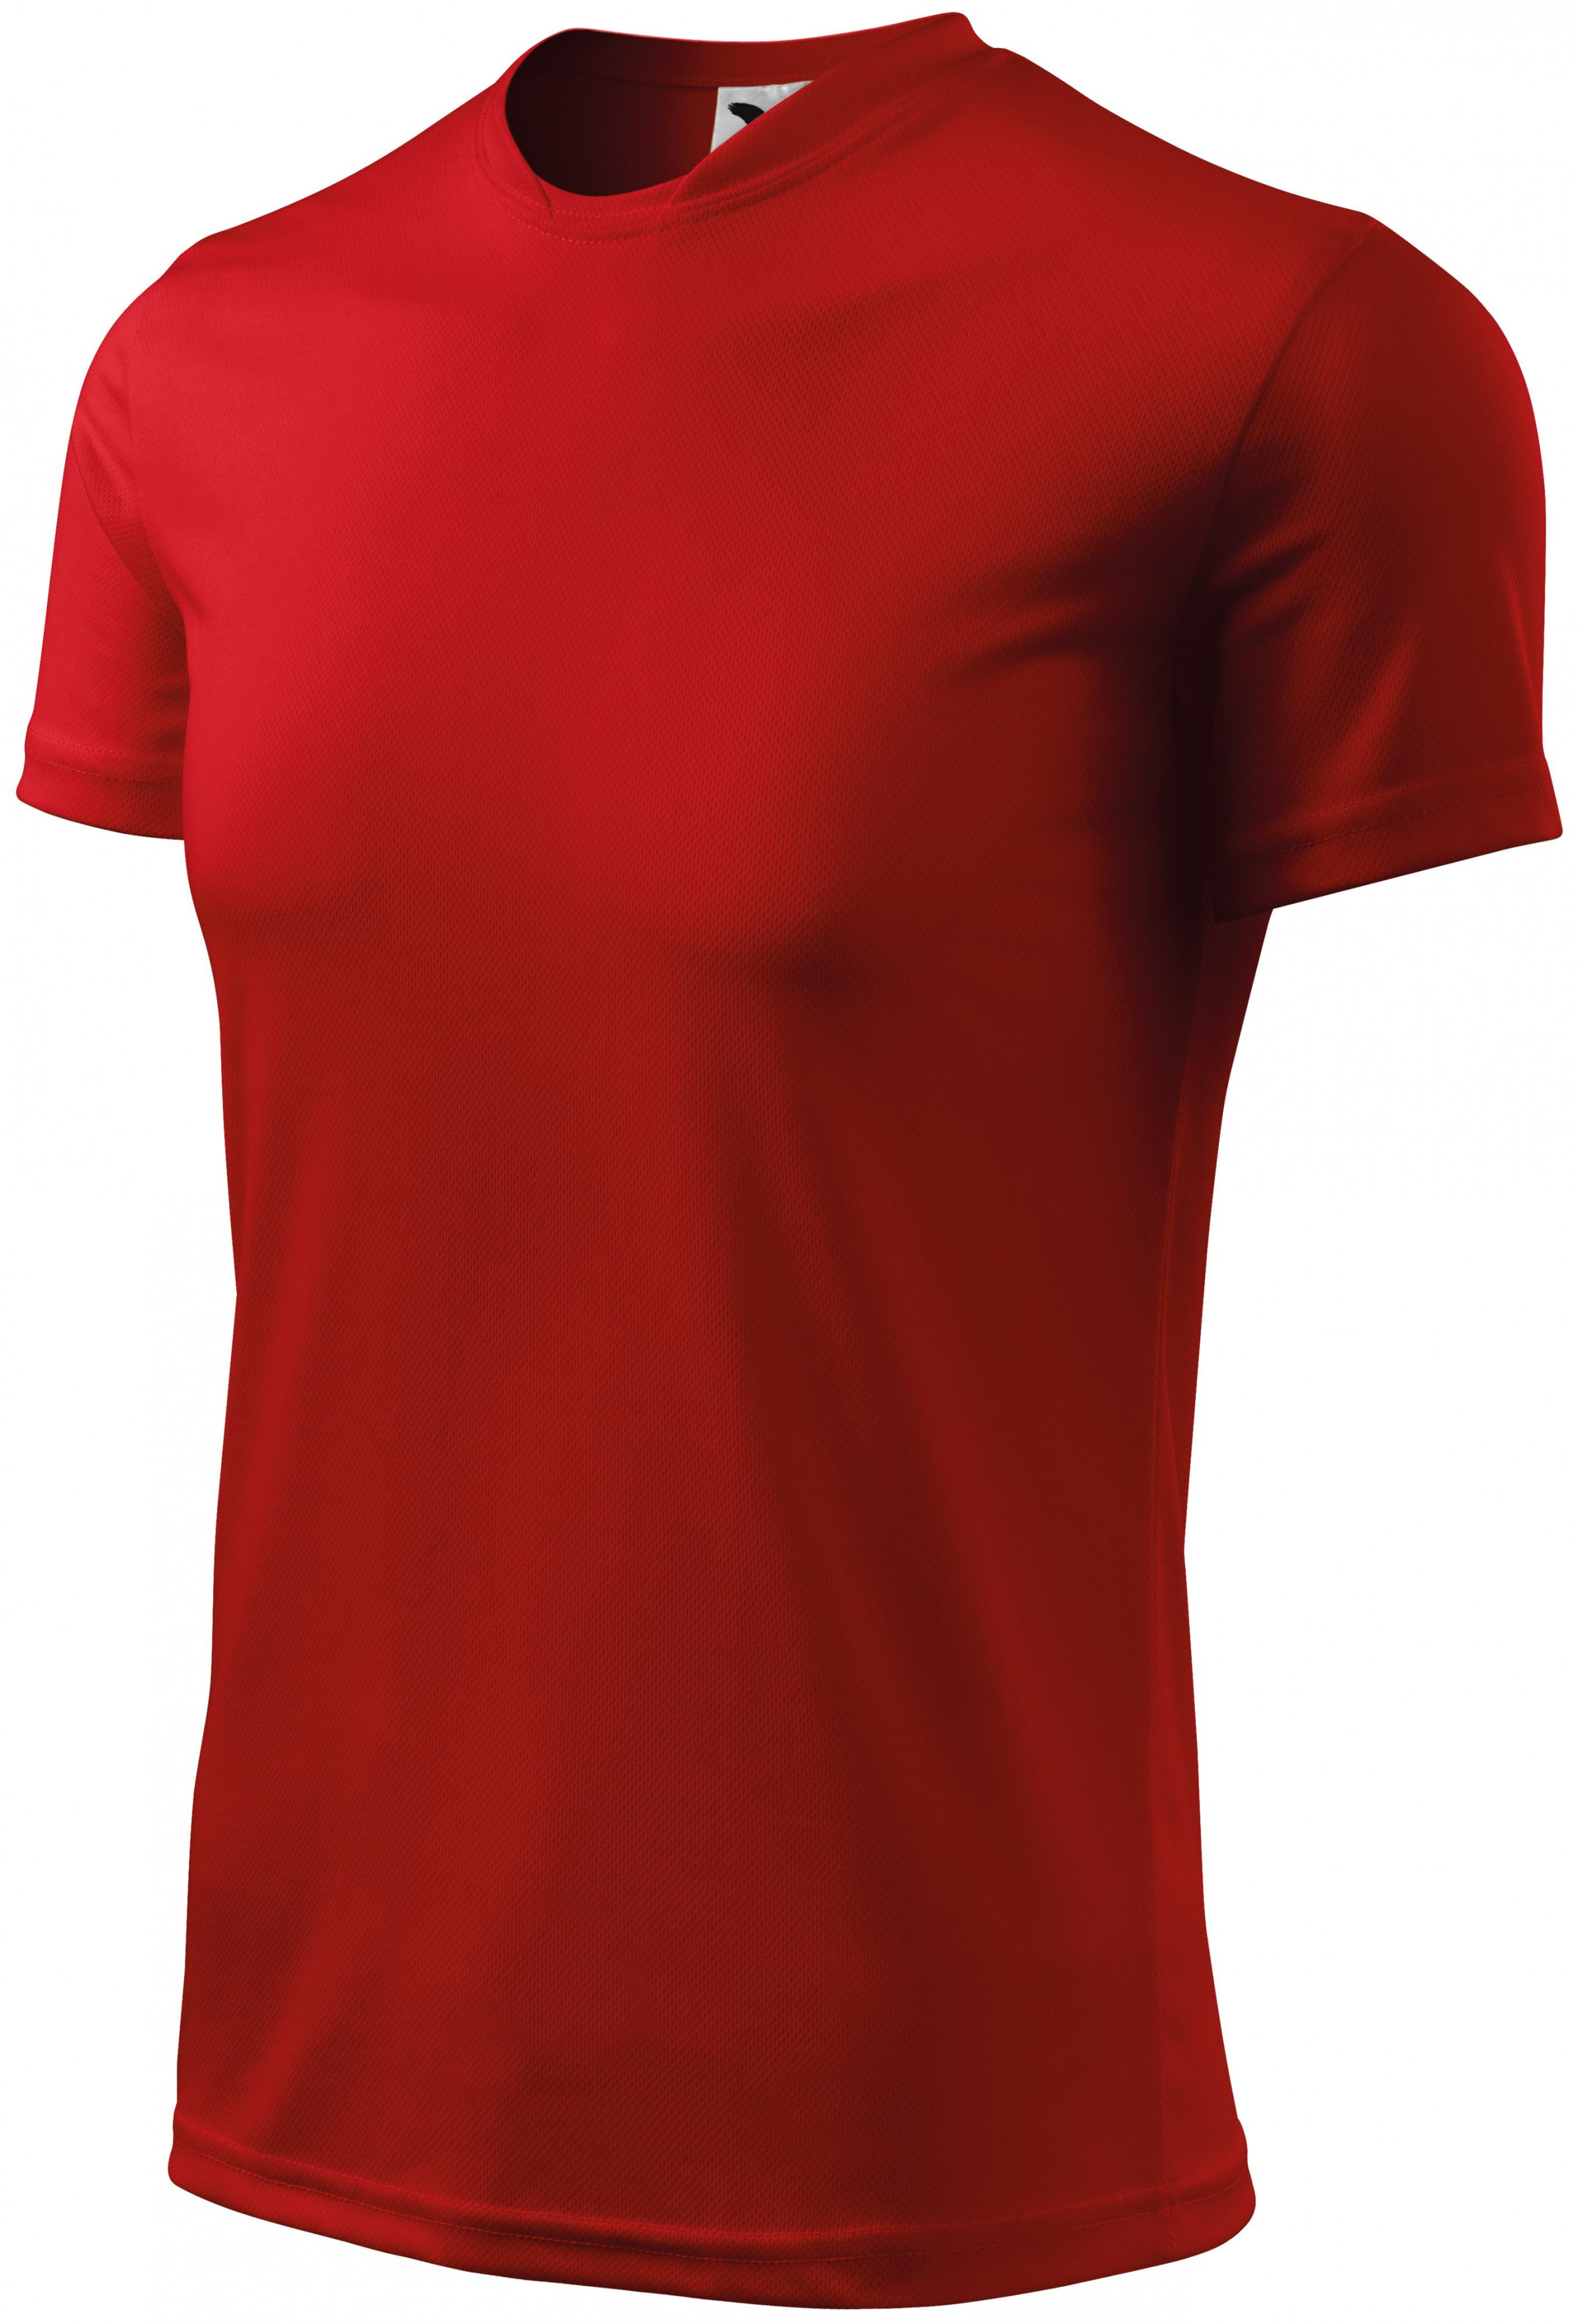 Športové tričko detské, červená, 134cm / 8rokov